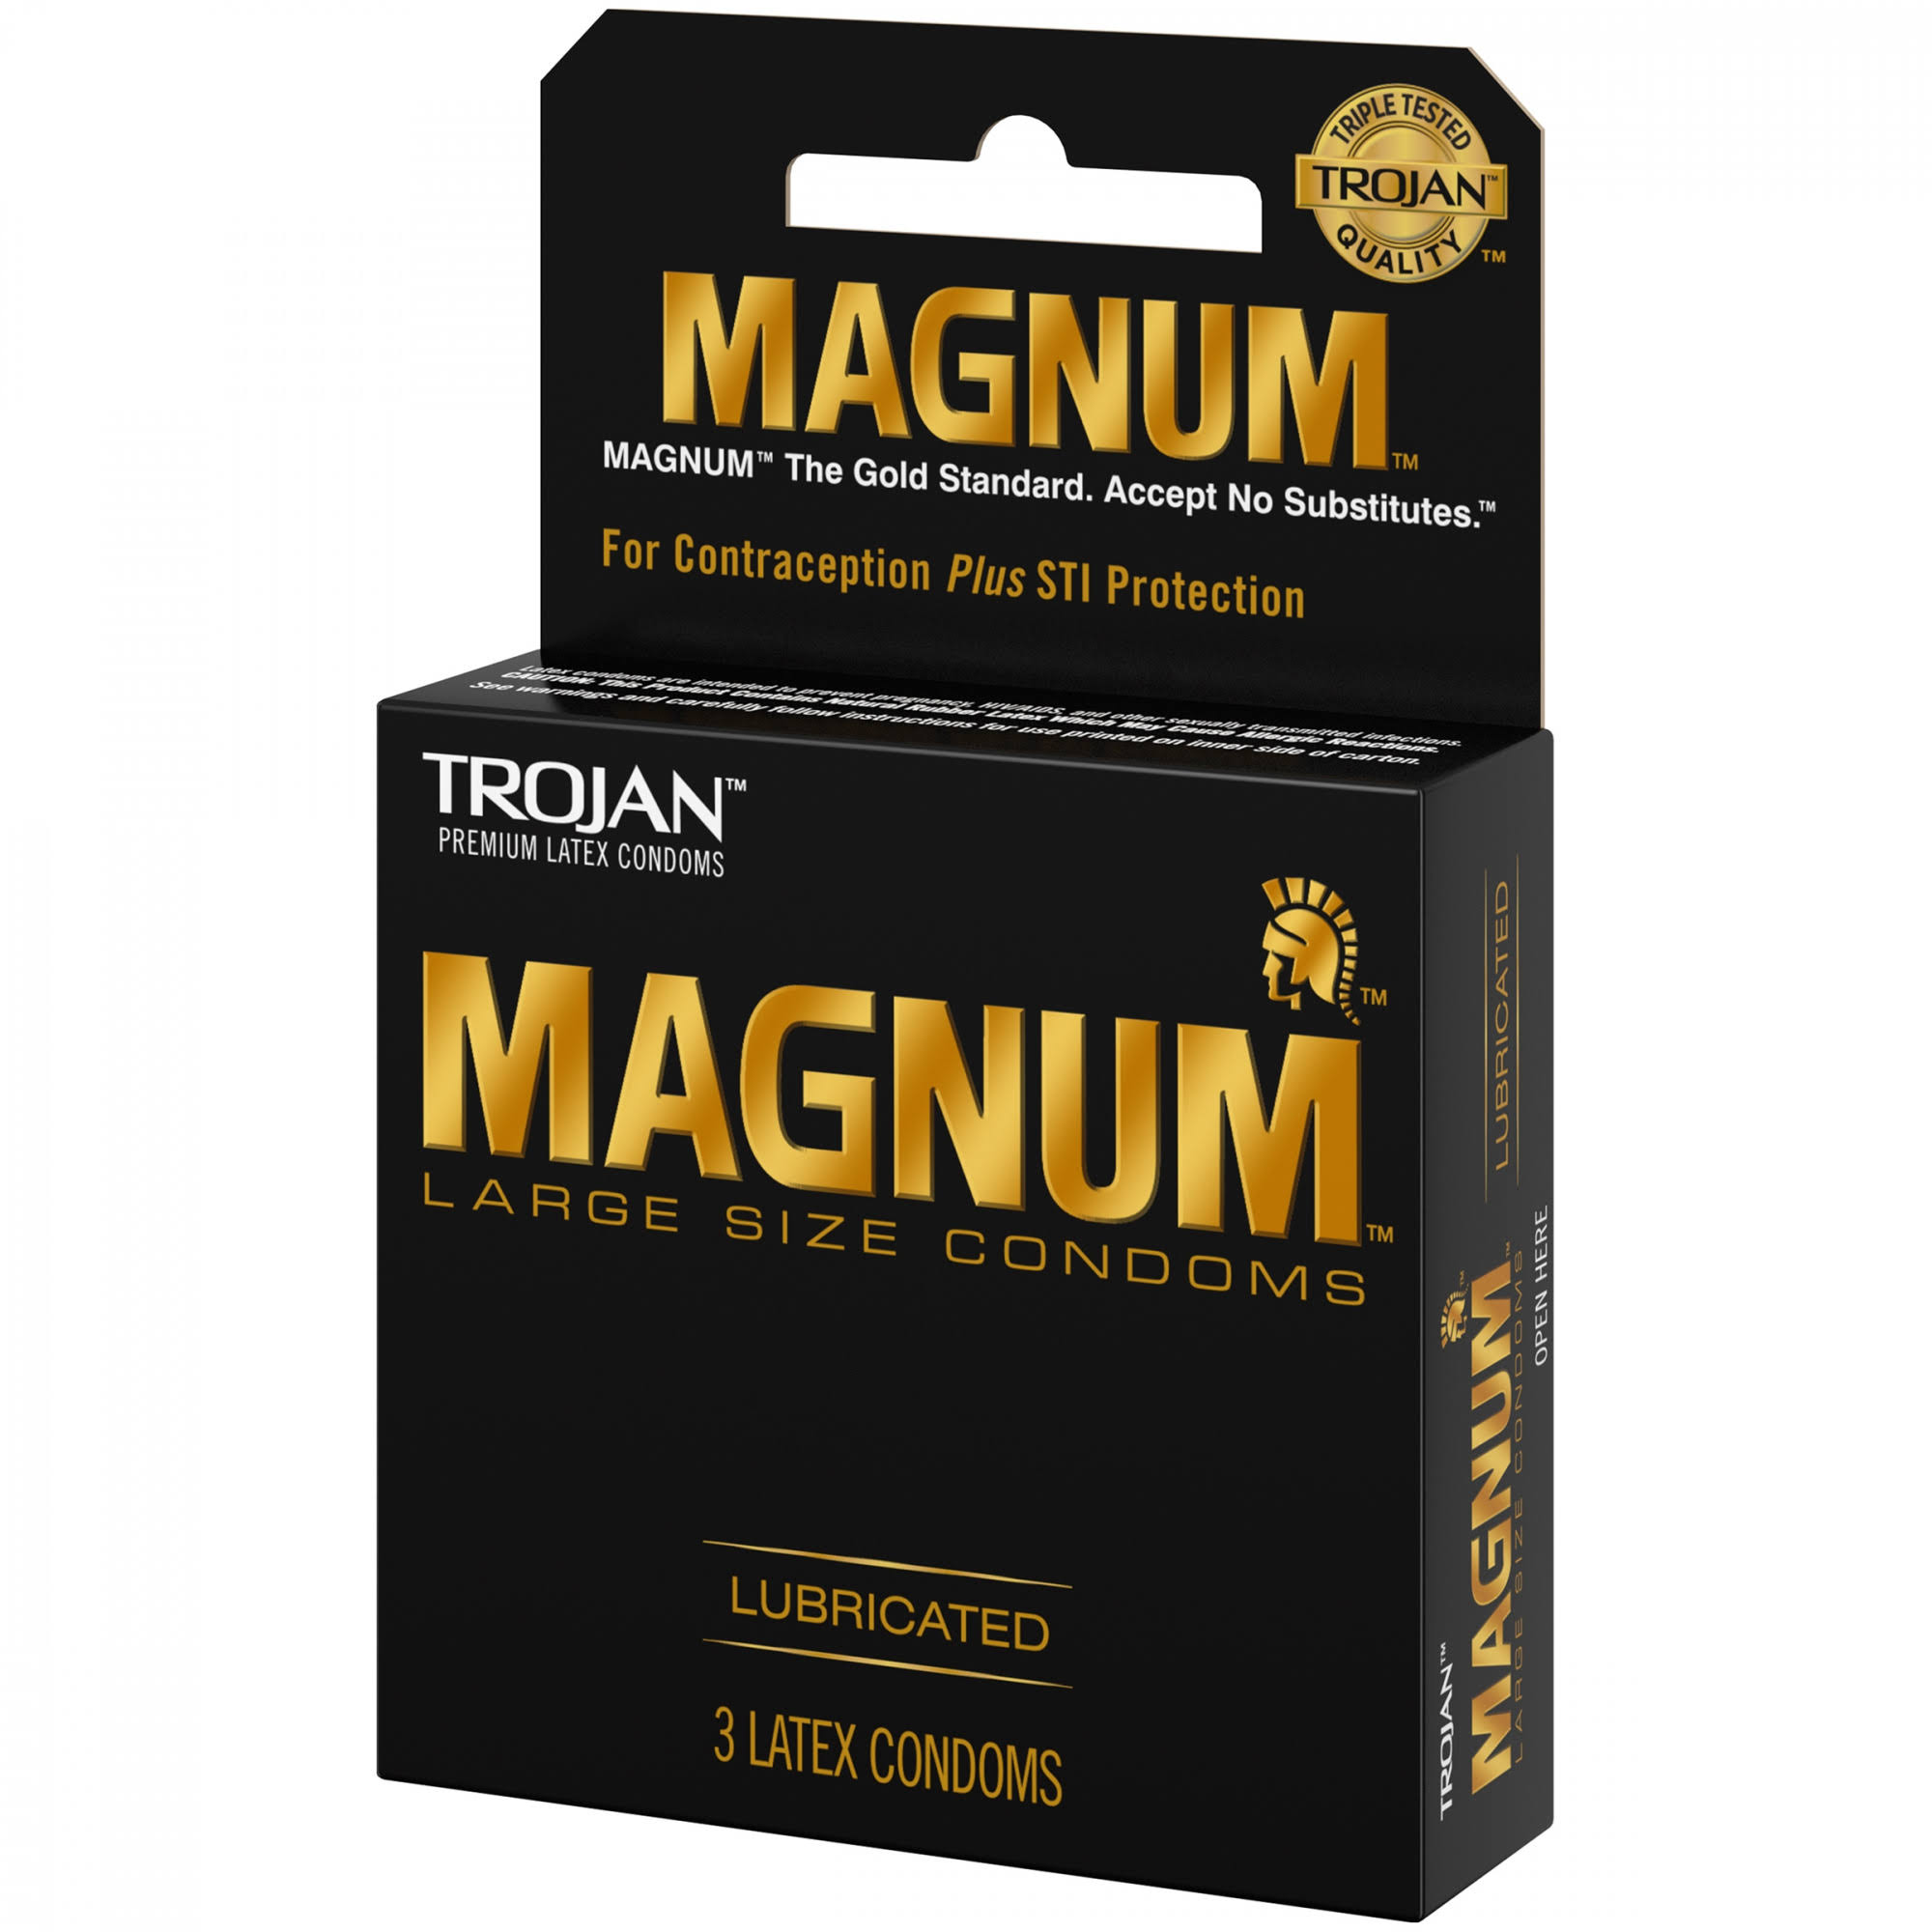 Trojan Magnum Lubricated Premium Latex Condoms - Large Size, 3 Pack